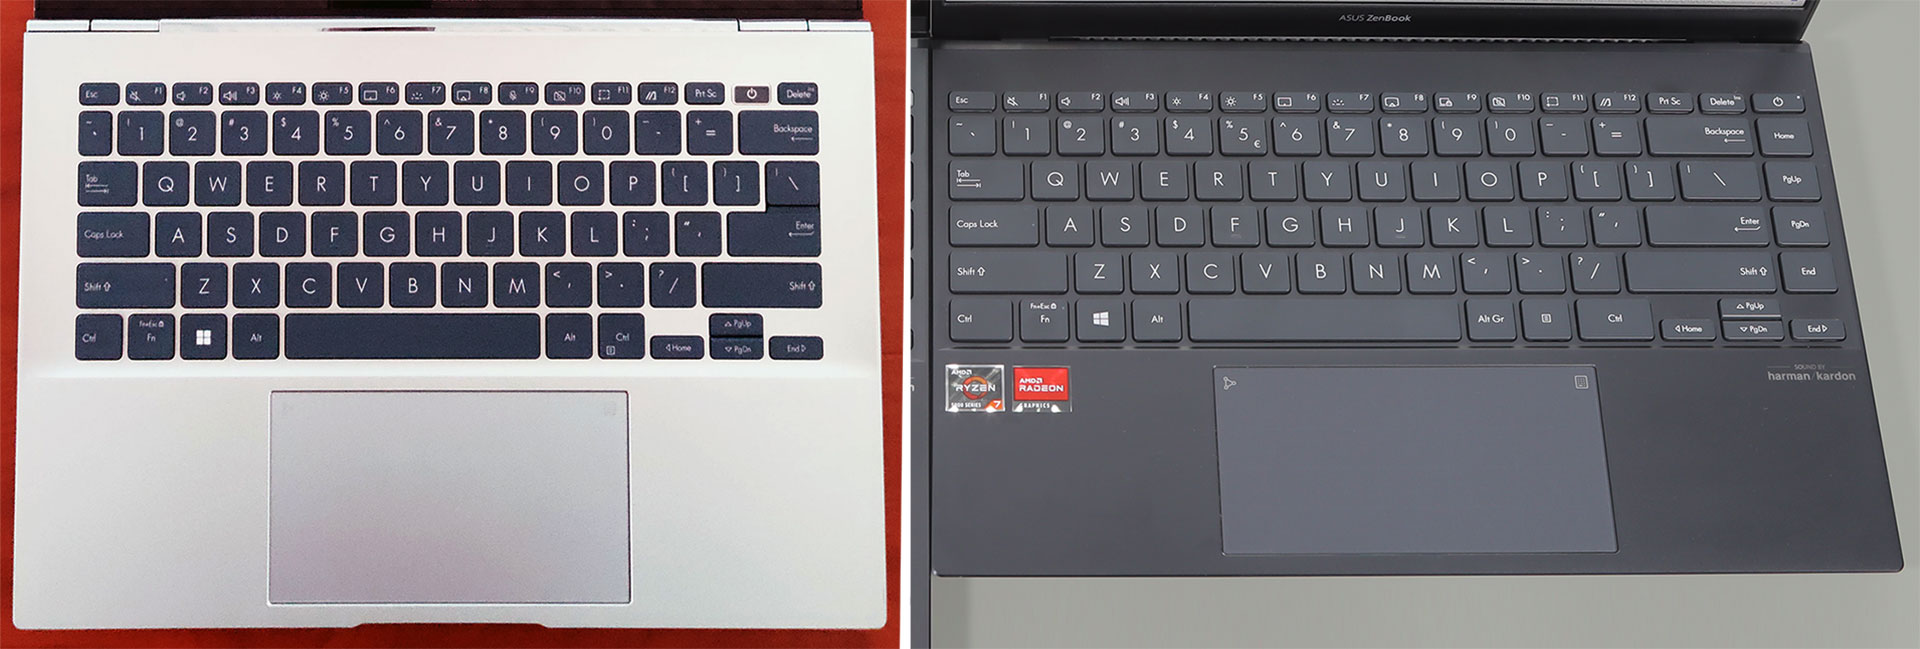 2022 ZenBook 14 UX4302 (left) vs 2021 ZenBook 14 UX425 (right)